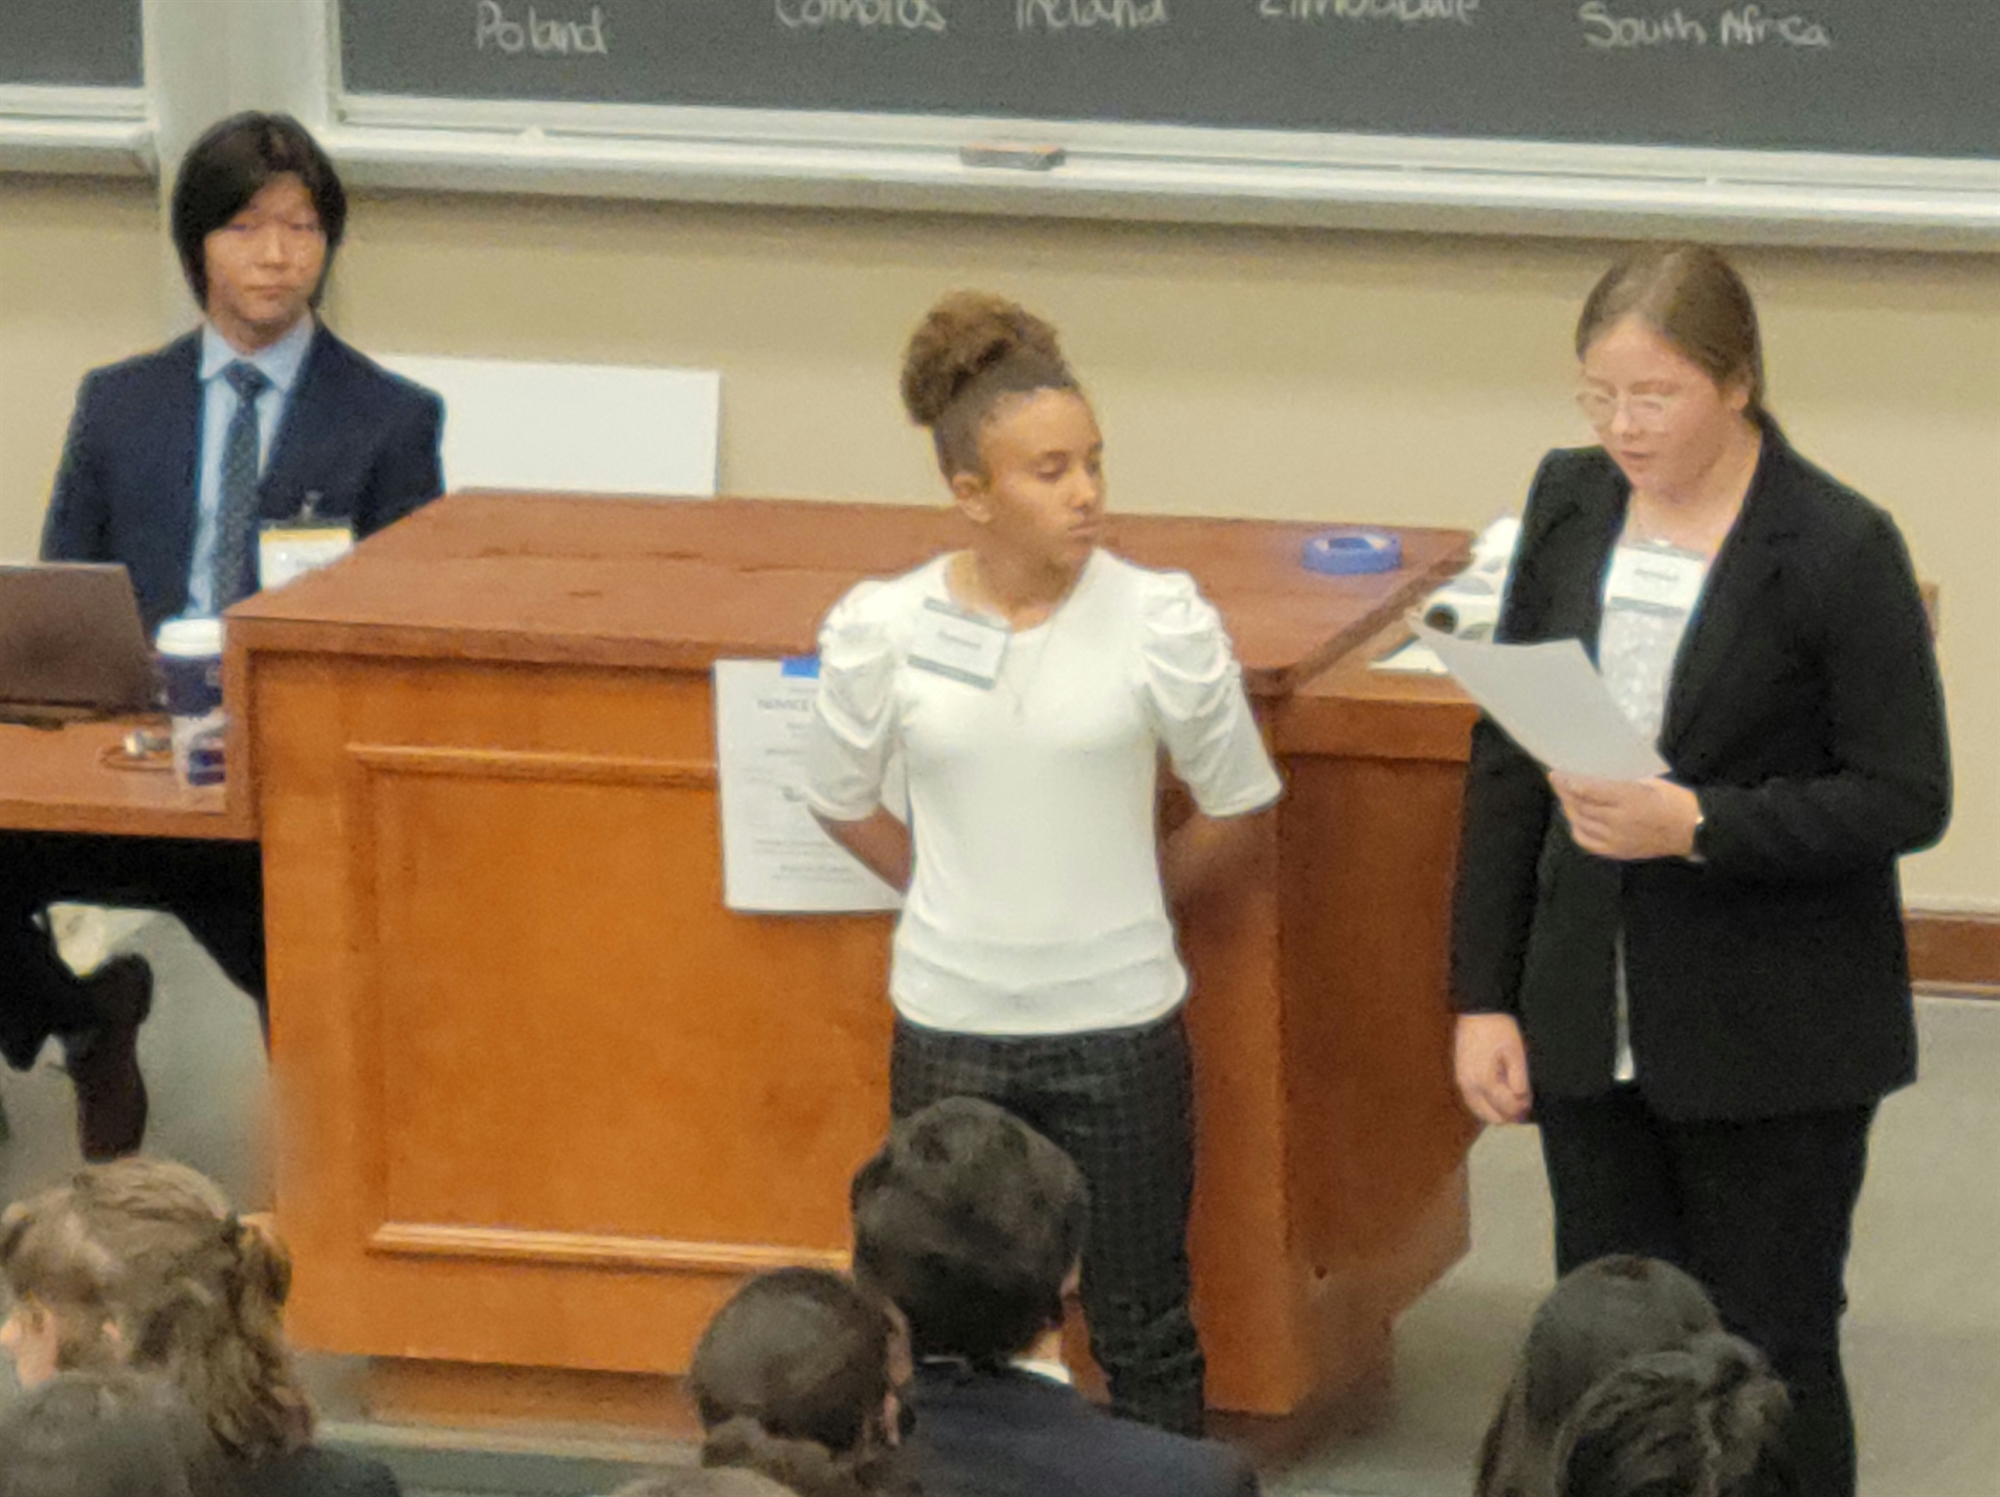 Students debating at a conference